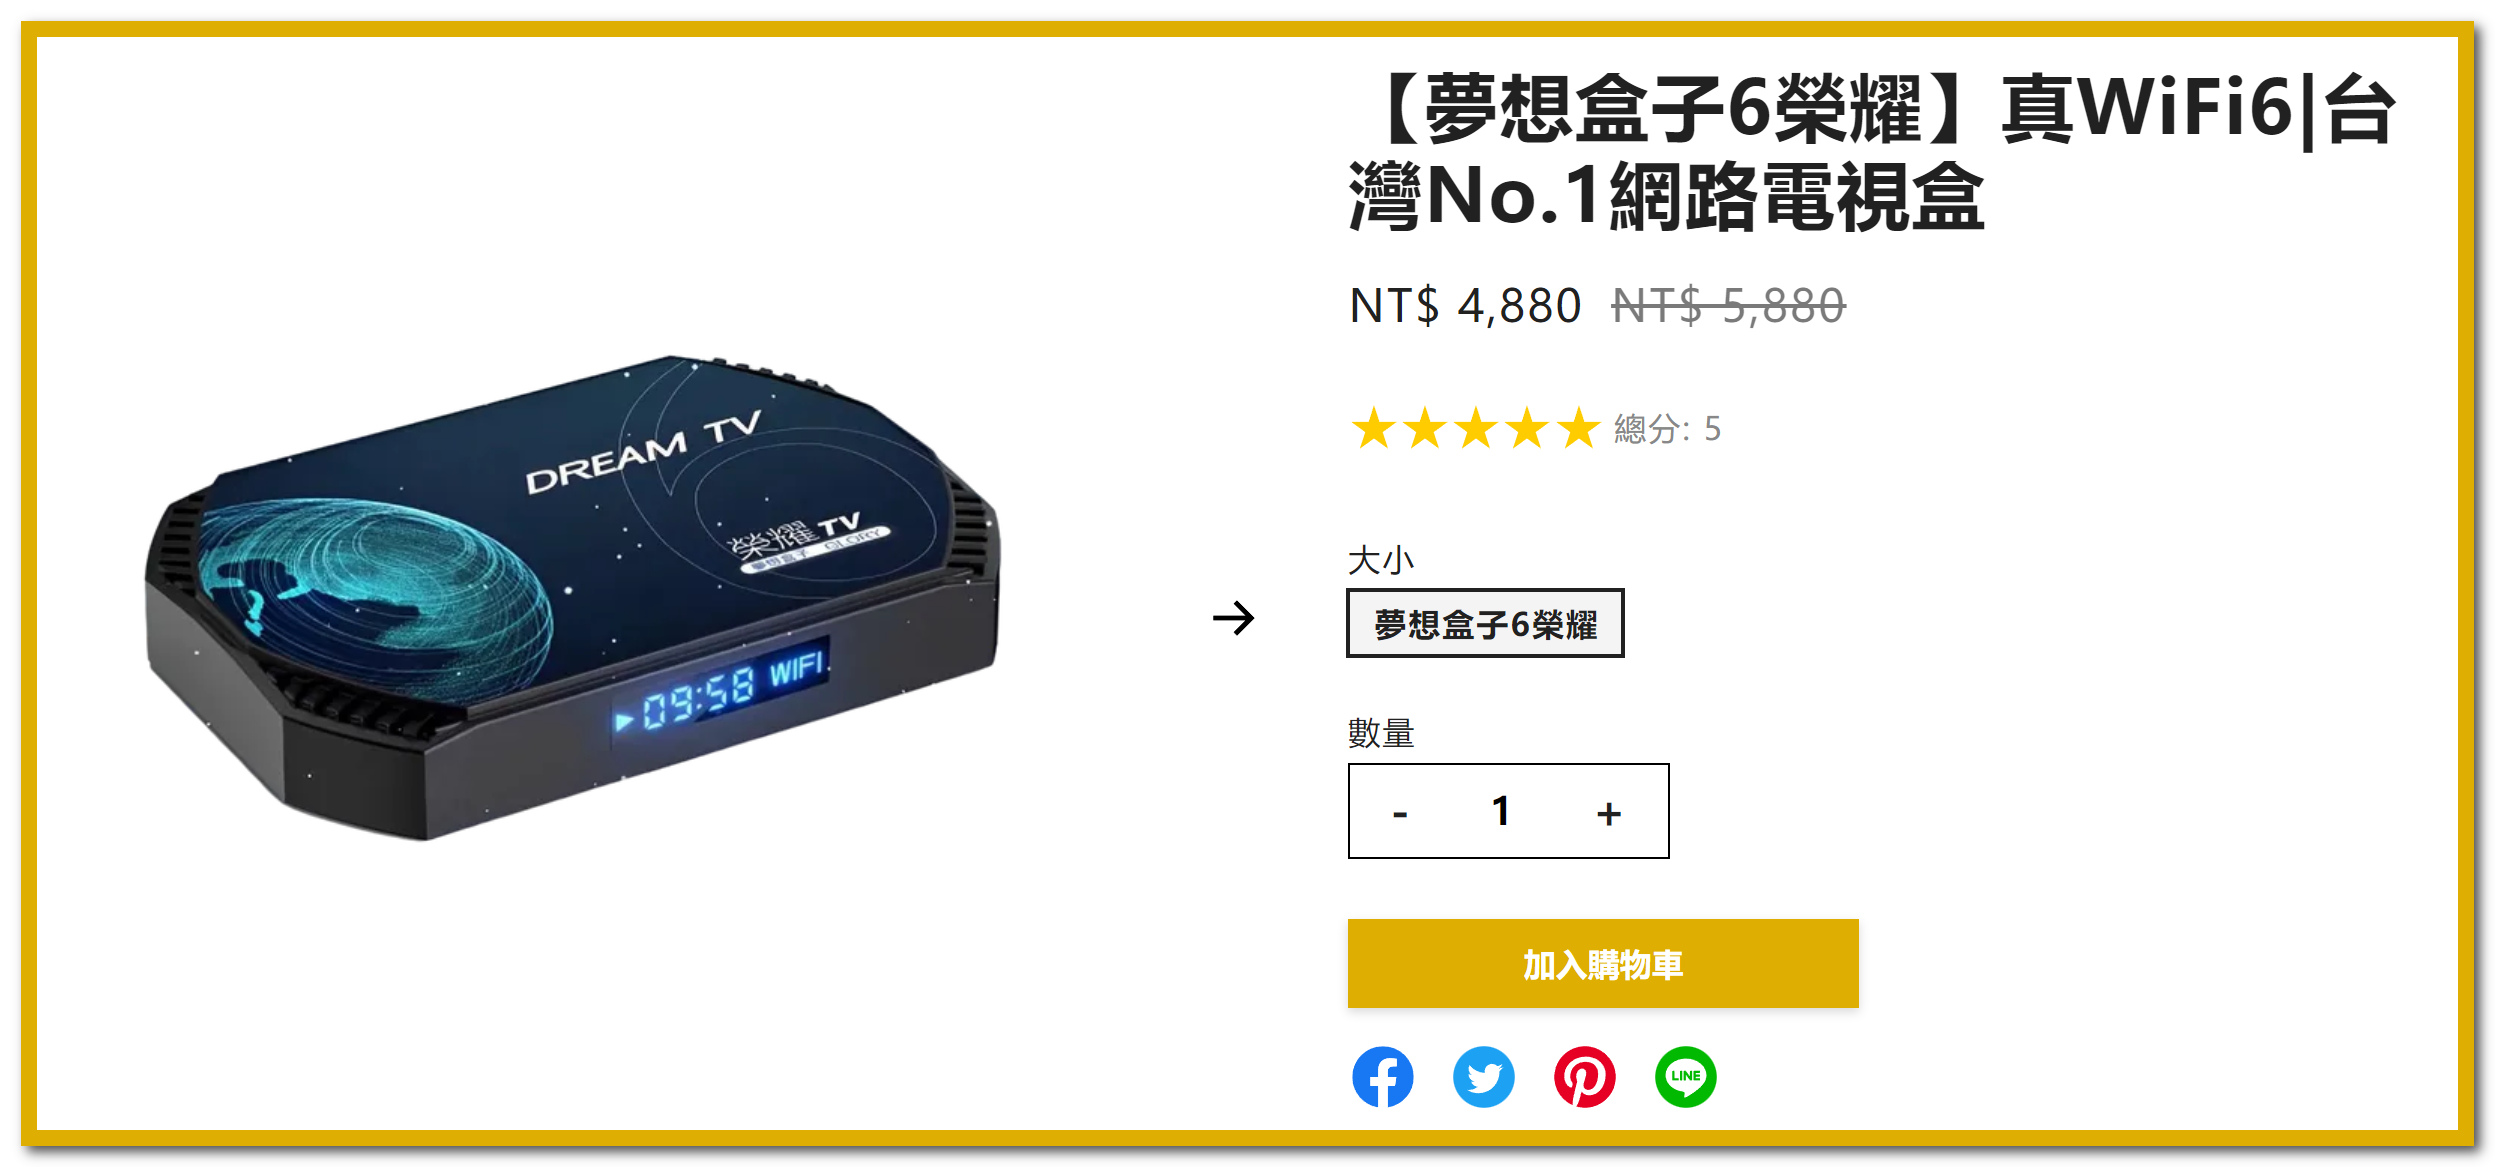 【夢想盒子6】榮耀評測，台灣首款WIFI6正版電視盒，8K播放，一次購買終身免費。(2023年) - 暴風直播, 網路電視盒規格效能差異, 夢想盒子經銷, 2.4G語音遙控器, OTT正版授權, 頂尖規格的Amlogic s905x4處理器, Amlogic s905x4處理器, Dream TV Overlord, 獨家三語音系統, DREAM TV預購活動, 送HDMI2.0, Remove term: 支援1000M網路速度, 小米電視盒 支援1000M網路速度, 夏傑語音, 環球TV, 環球影城, Disney+, 暴風影院, 編輯推薦, 夢想盒子6語音系統, 夢想盒子6榮耀預購, 夢想盒子6聲控機皇, 夢想盒子6免費第四台, 夢想盒子6支援8K, 夢想盒子6Dream OS 6.0, 夢想盒子6DDR4 4G+128G, 夢想盒子6硬體部分, 夢想盒子6榮耀國際版, 夢想盒子第六代, 夢想盒子6榮耀預購活動, 榮耀重置設定, 夢想盒子6榮耀, 電視盒ptt, 小米盒子, NETFLIX, 敗家達人, 夢想盒子, Dream TV, 安博, 安博盒子, 敗家輝哥, 富榮街36巷27號, 呈星有限公司, 電視盒推薦, 電視盒評價, 電視盒推薦2021, 電視盒是什麼, 電視盒推薦mobile01, 電視盒第四台, 網路電視盒, 八德富榮街36巷27號, 桃園網路電視盒, 桃園電視盒, 桃園網路盒, 富榮電視盒, 八德富榮電視盒專賣店, 八德富榮電視盒, 八德電視盒, 電視盒要怎麼買？, 電視盒比較, 小米電視盒, 小米 - 敗家達人推薦